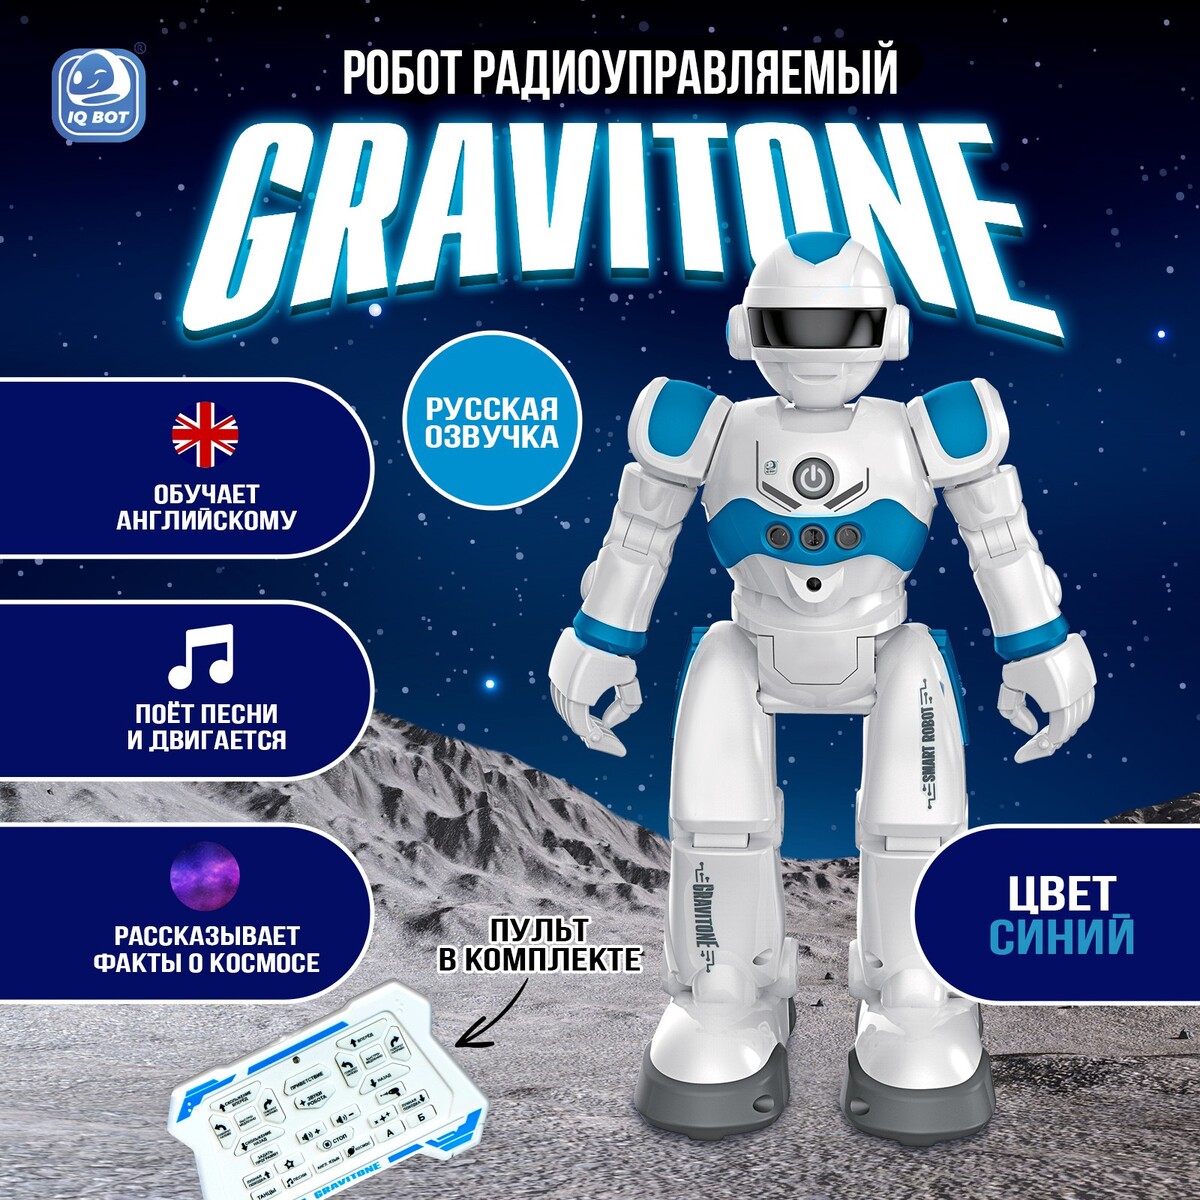 Робот радиоуправляемый iq bot gravitone, русское озвучивание, цвет синий робот junfa toys электромеханический воин будущего wb 03065 синий